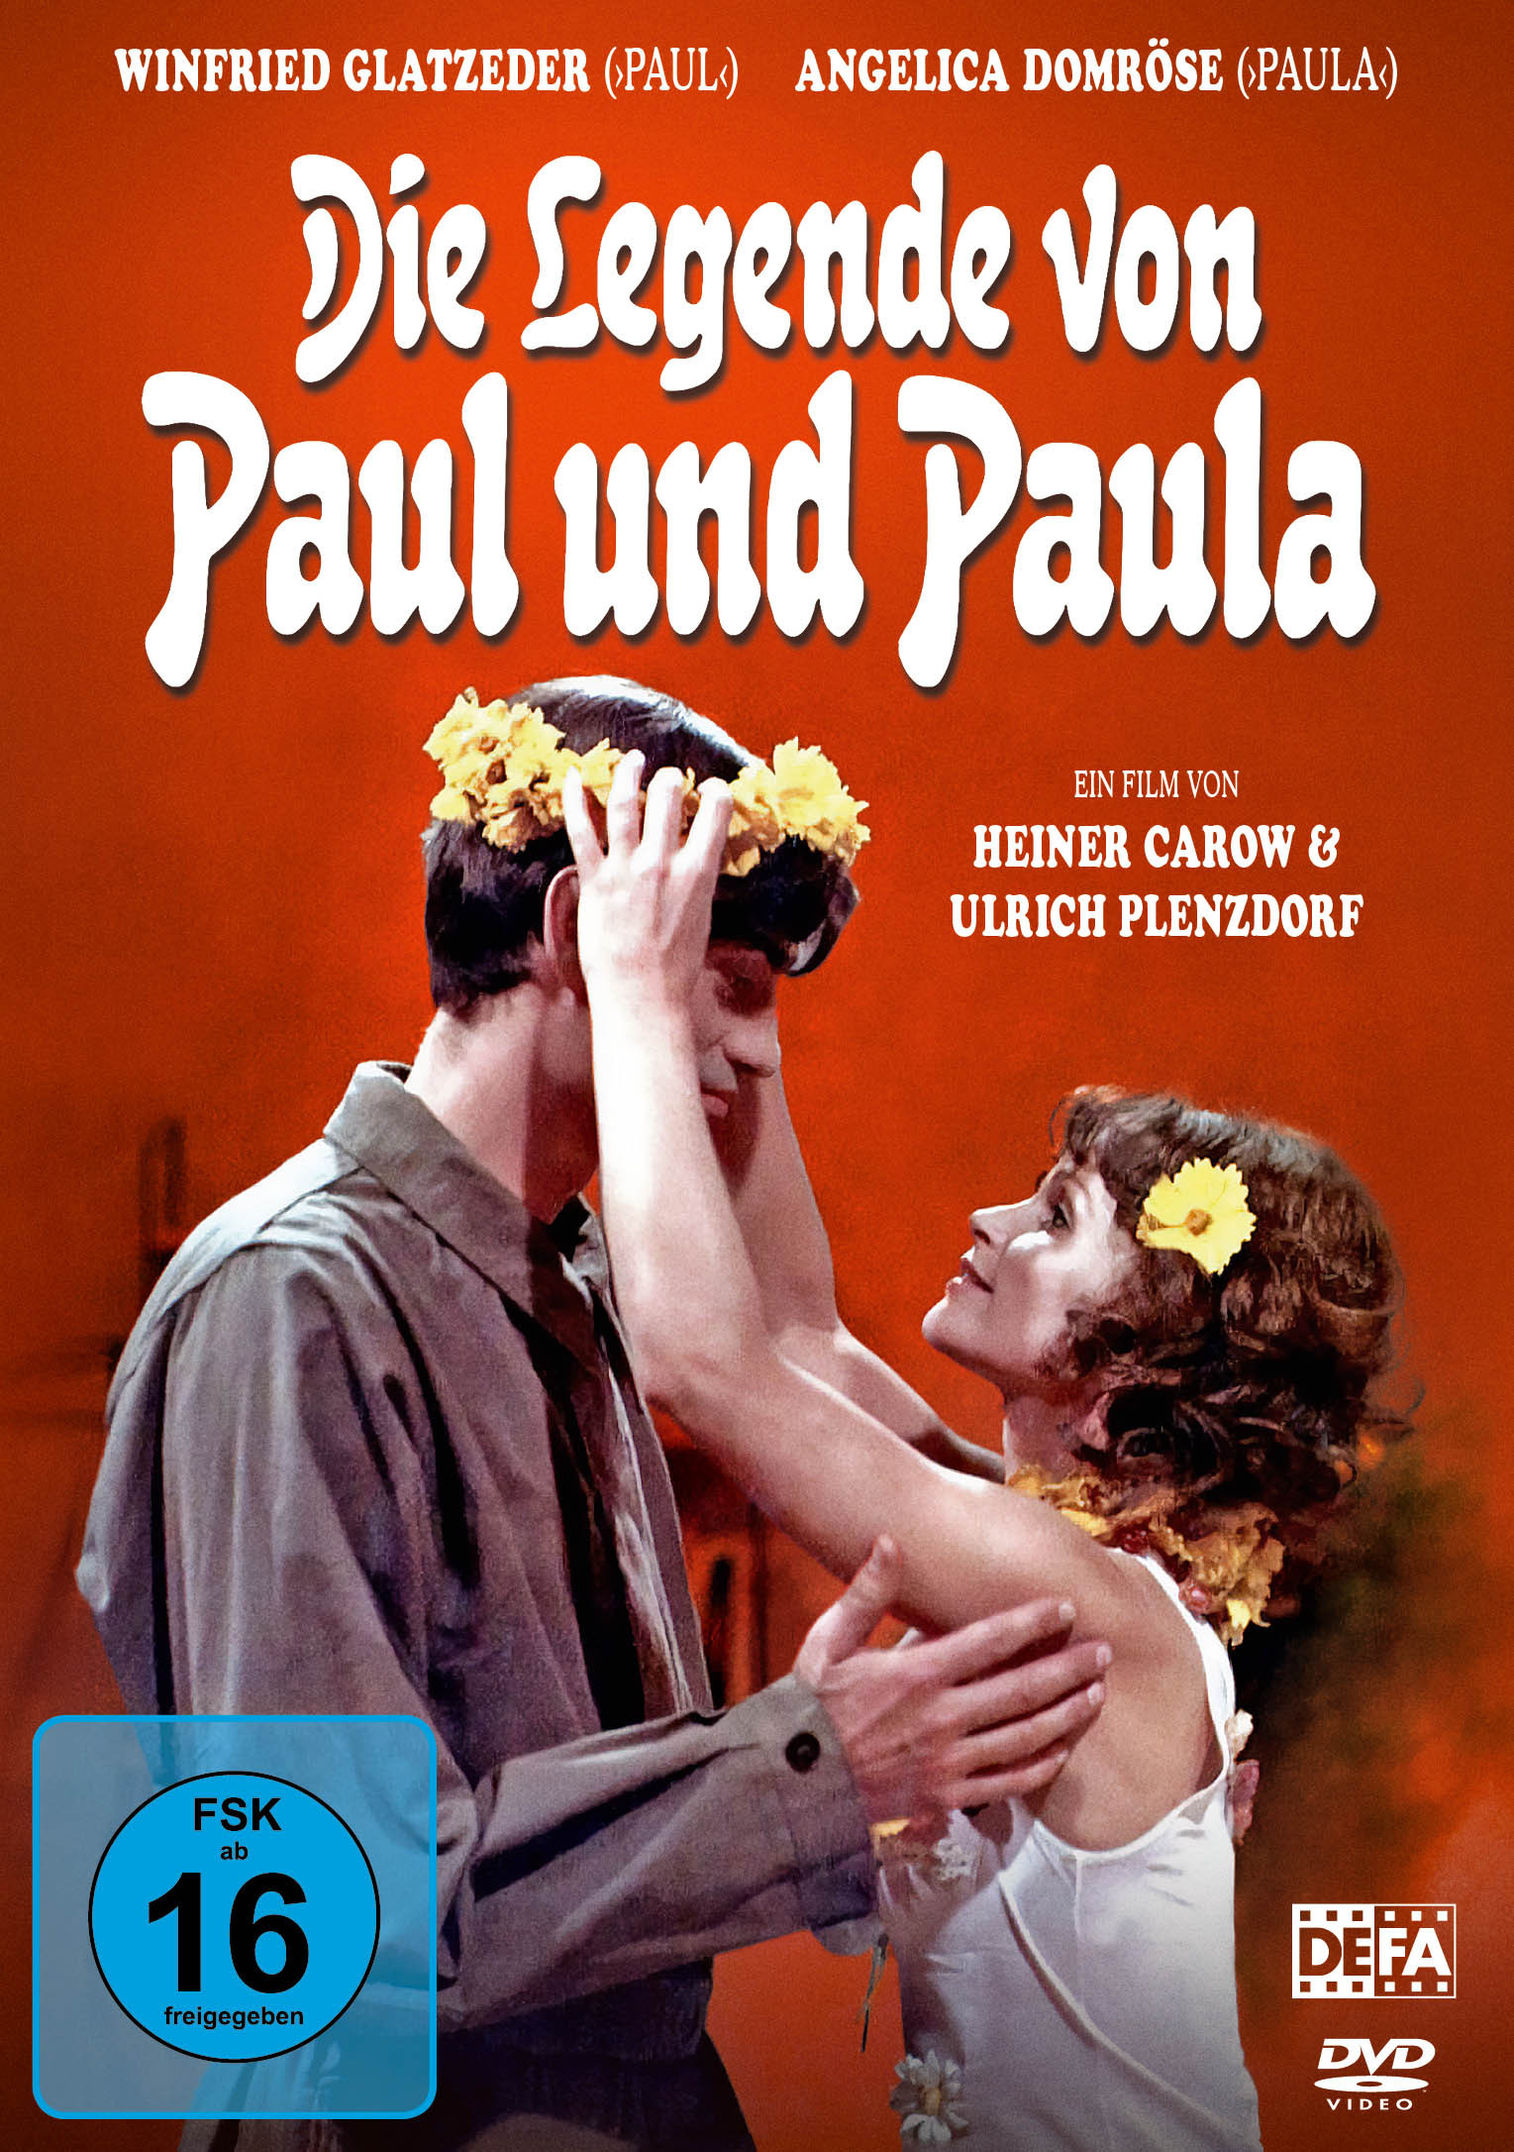 Die Legende von Paul und Paula DVD bei Weltbild.de bestellen